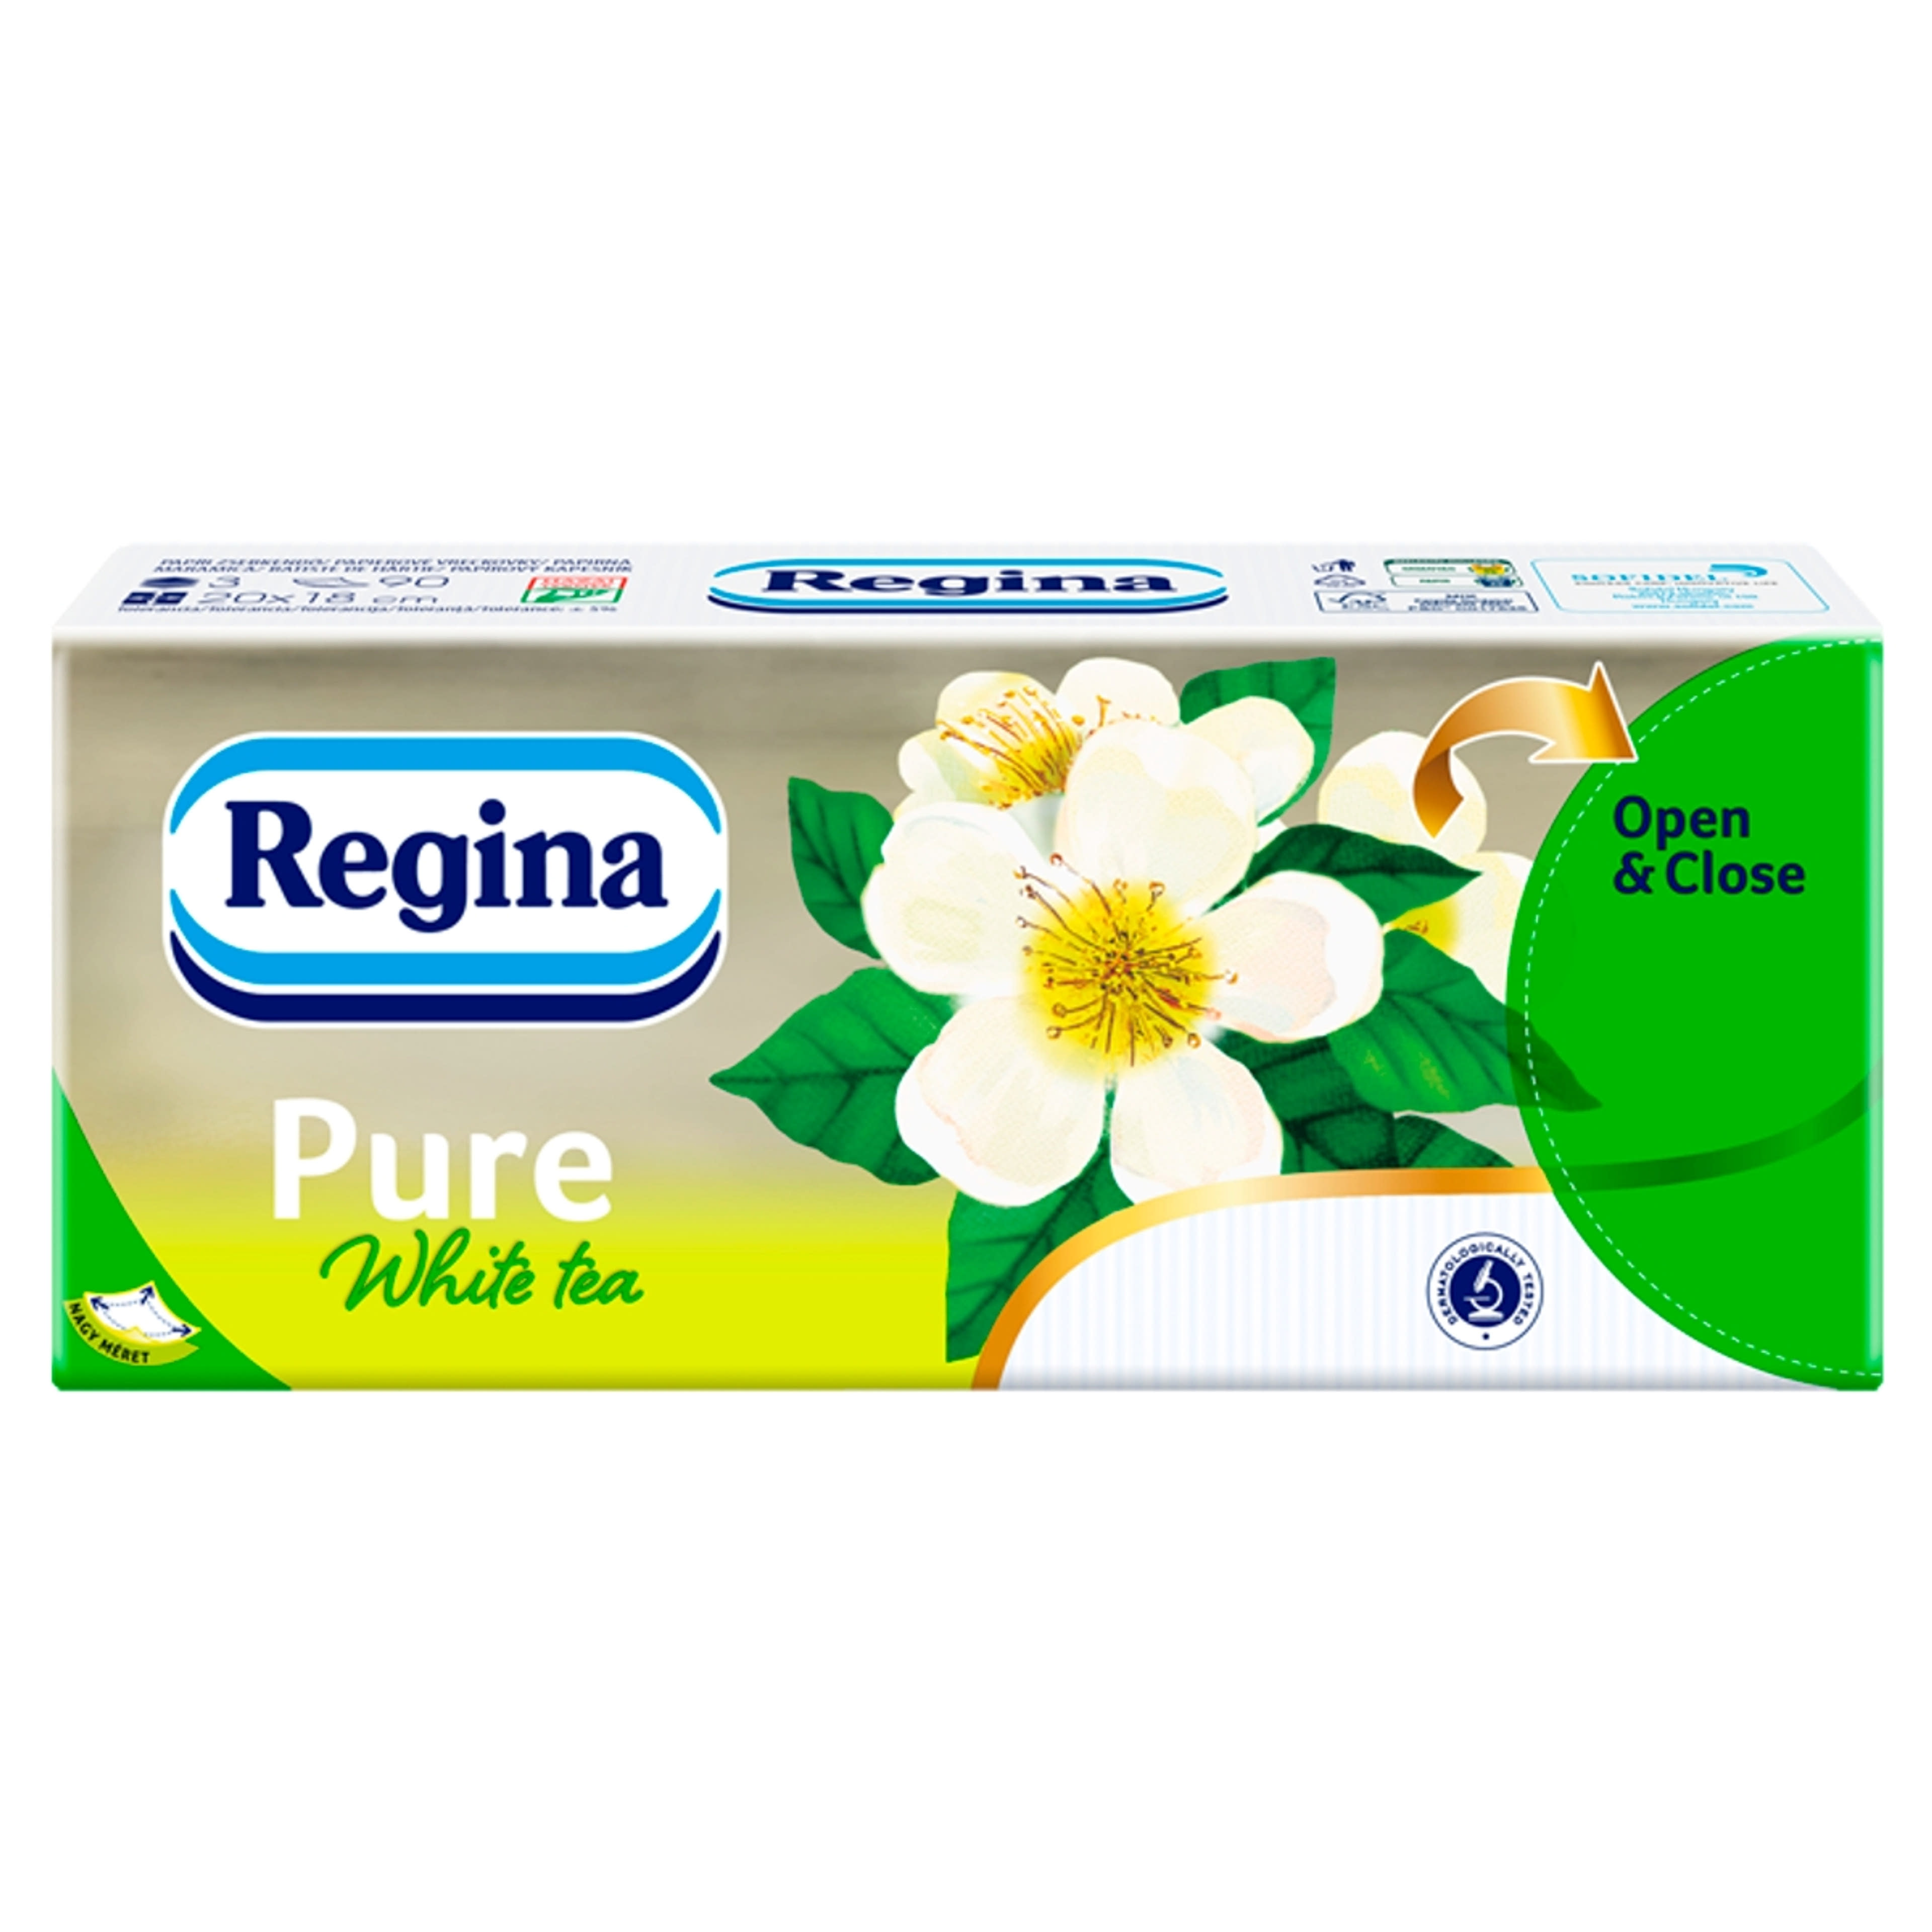 Regina papírzsebkendő pure white tea 3 rétegű - 1 db-1